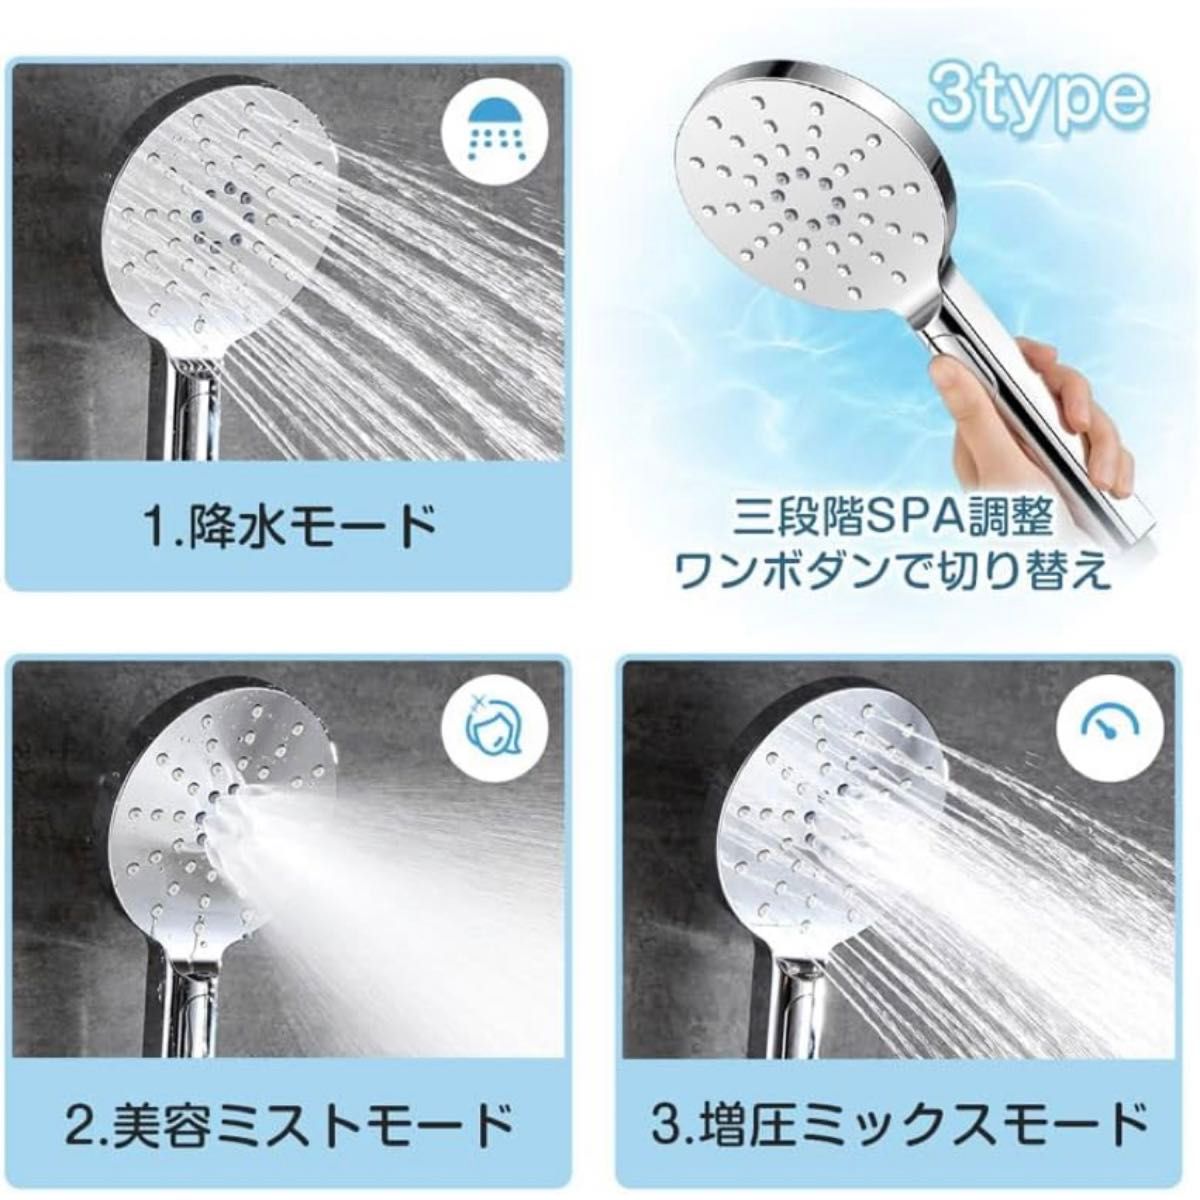 シャワーヘッド 水圧調整 ウルトラファインバブル ミスト 節水